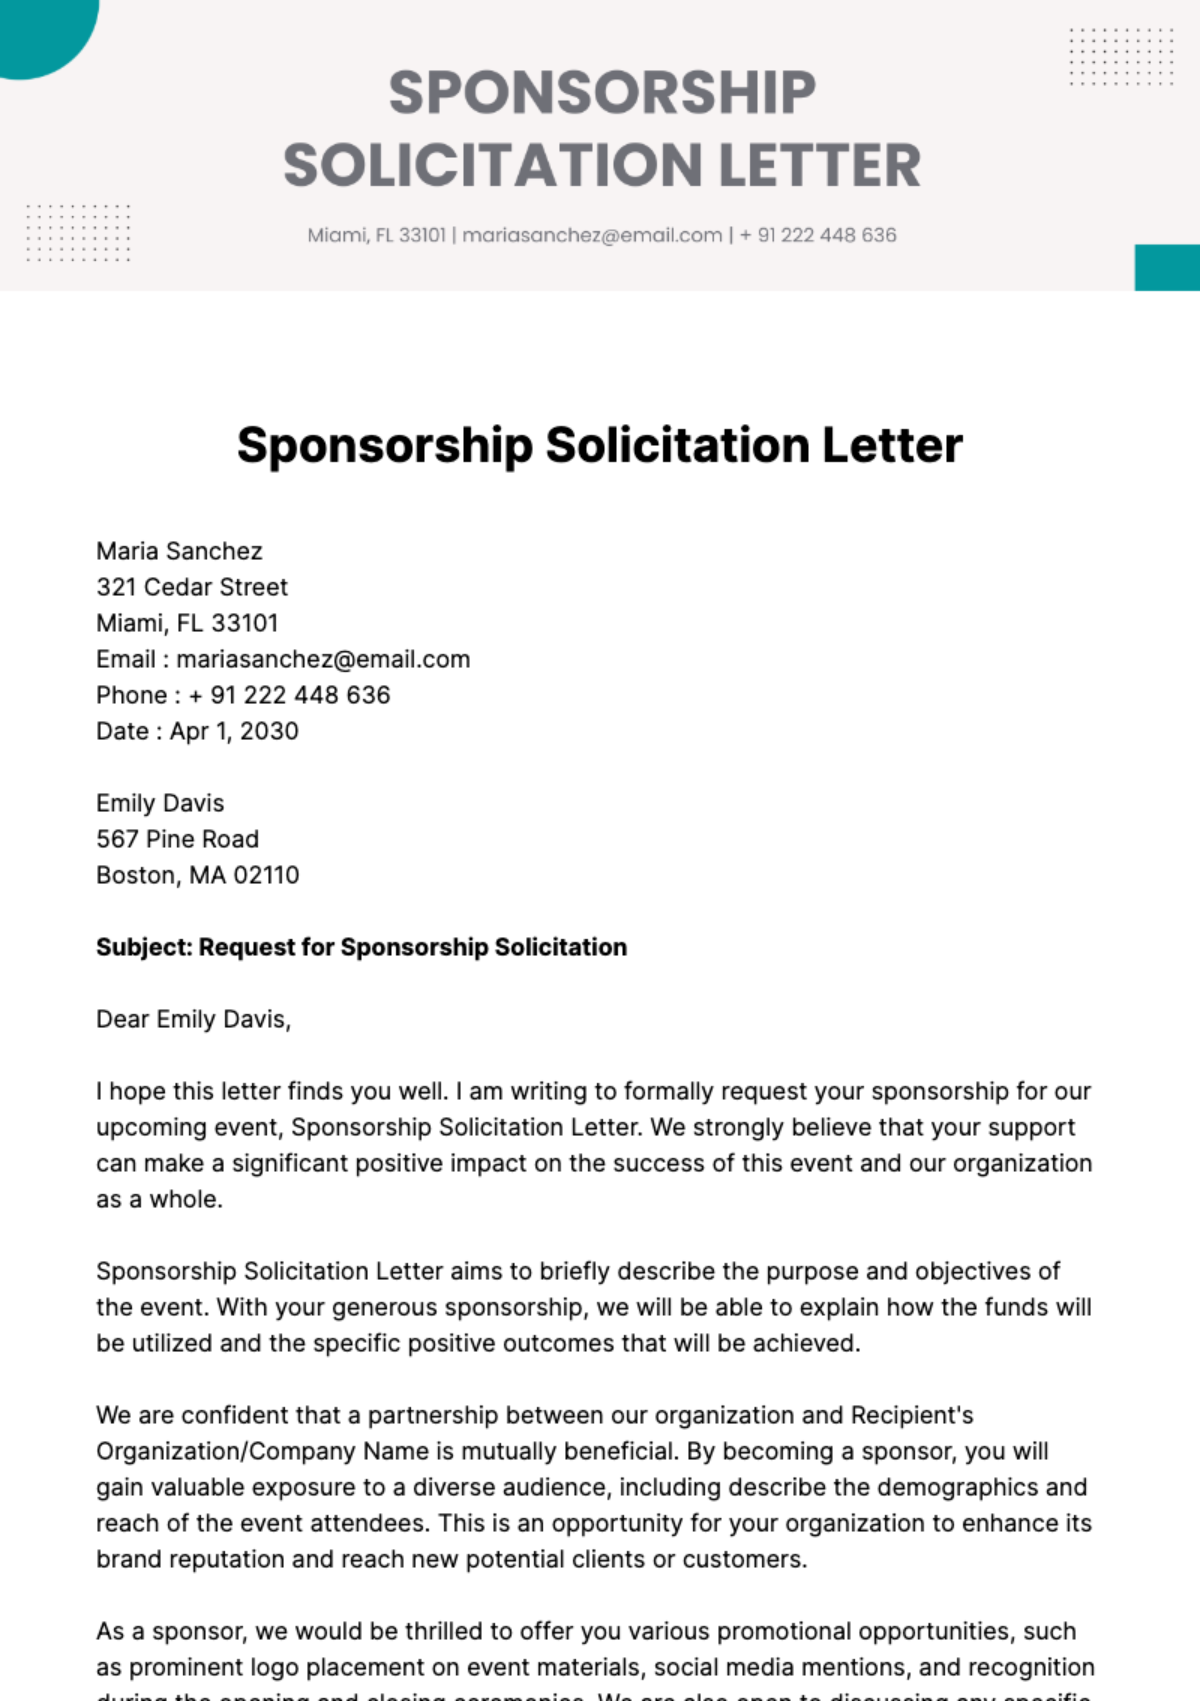 Sponsorship Solicitation Letter Template